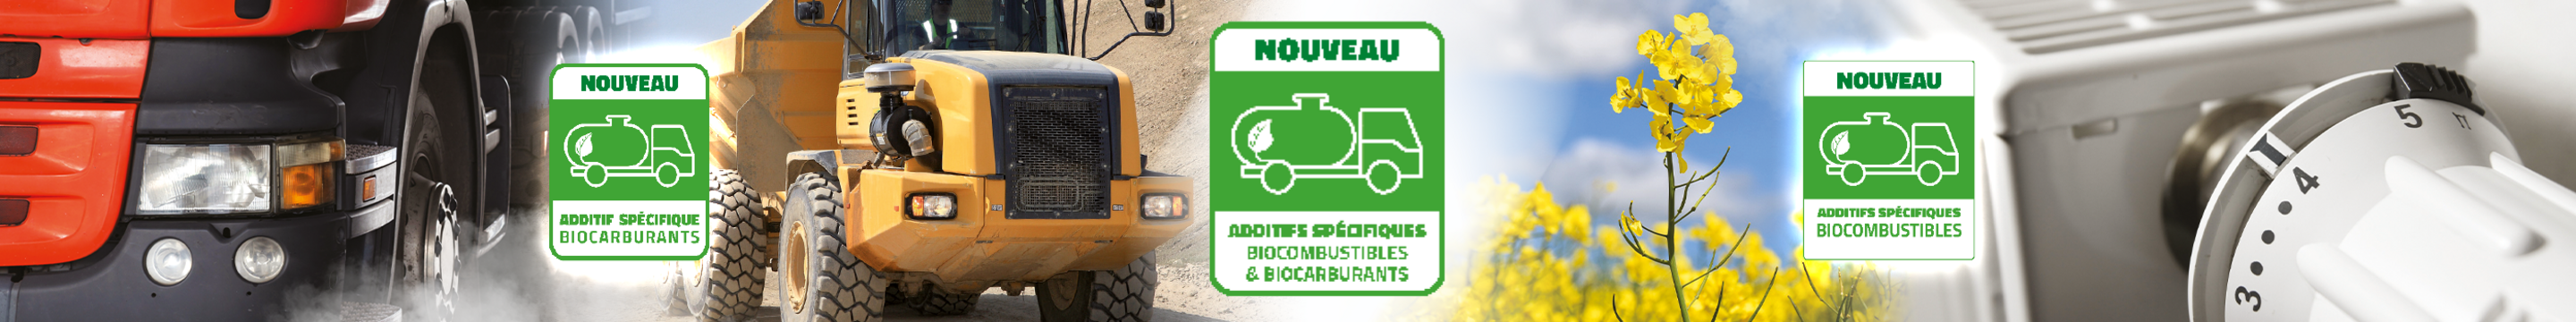 A_530_additif-specifique-biocarburant-et-biocombustible-2800-x-350